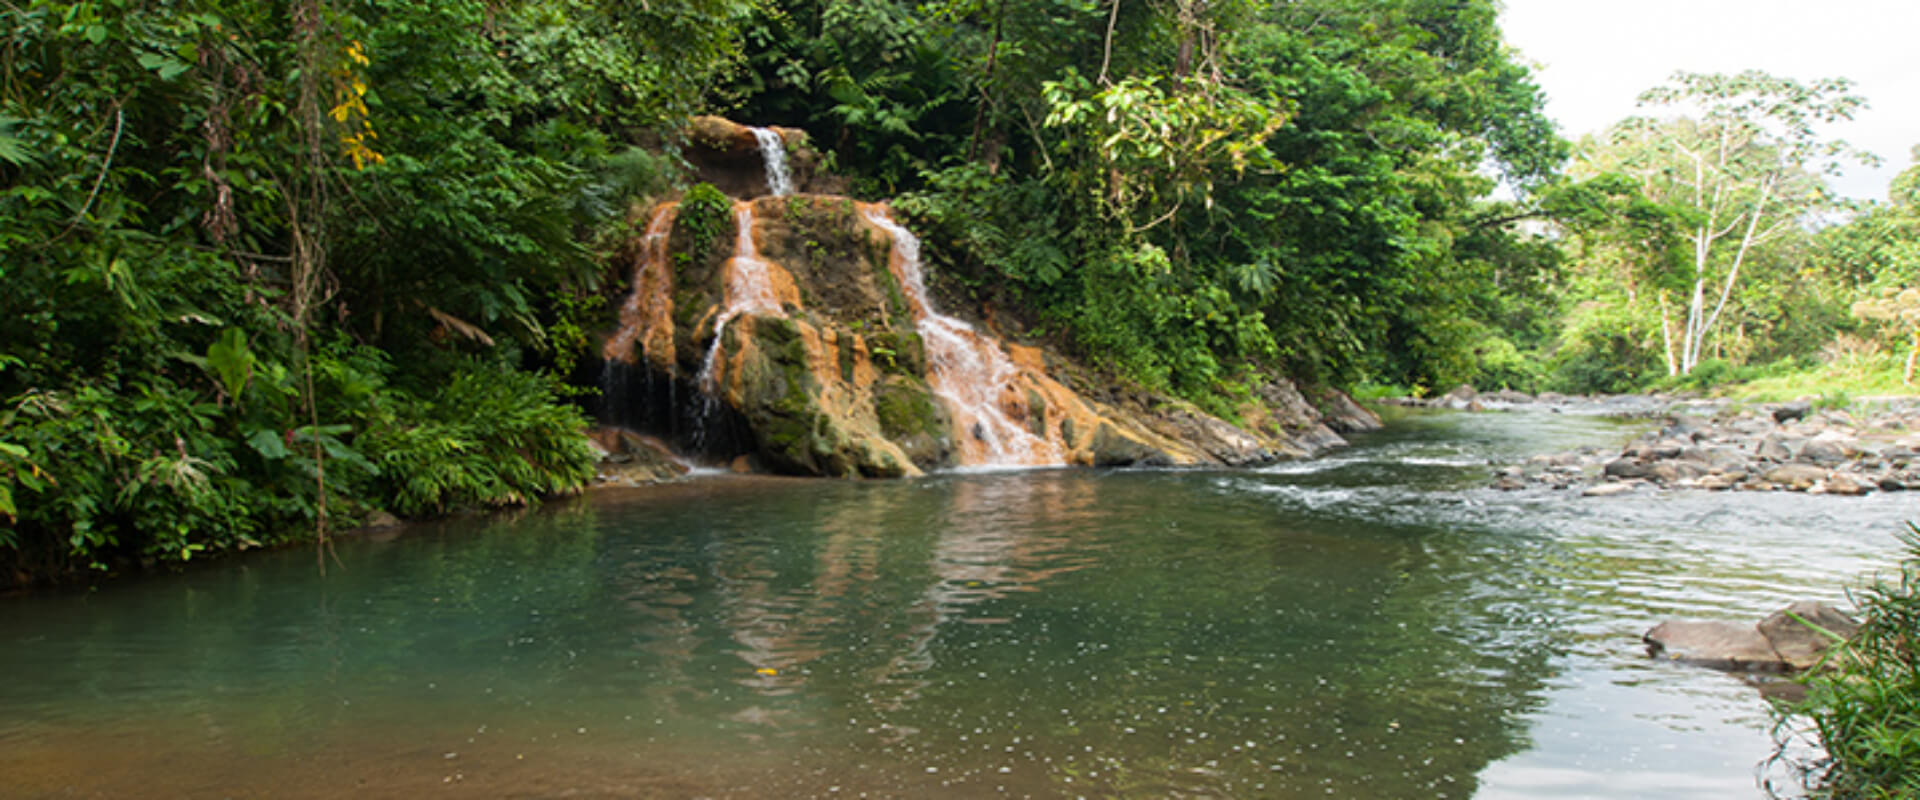 Recorrido combinado de Club Río multi-aventura | Costa Rica Jade Tours